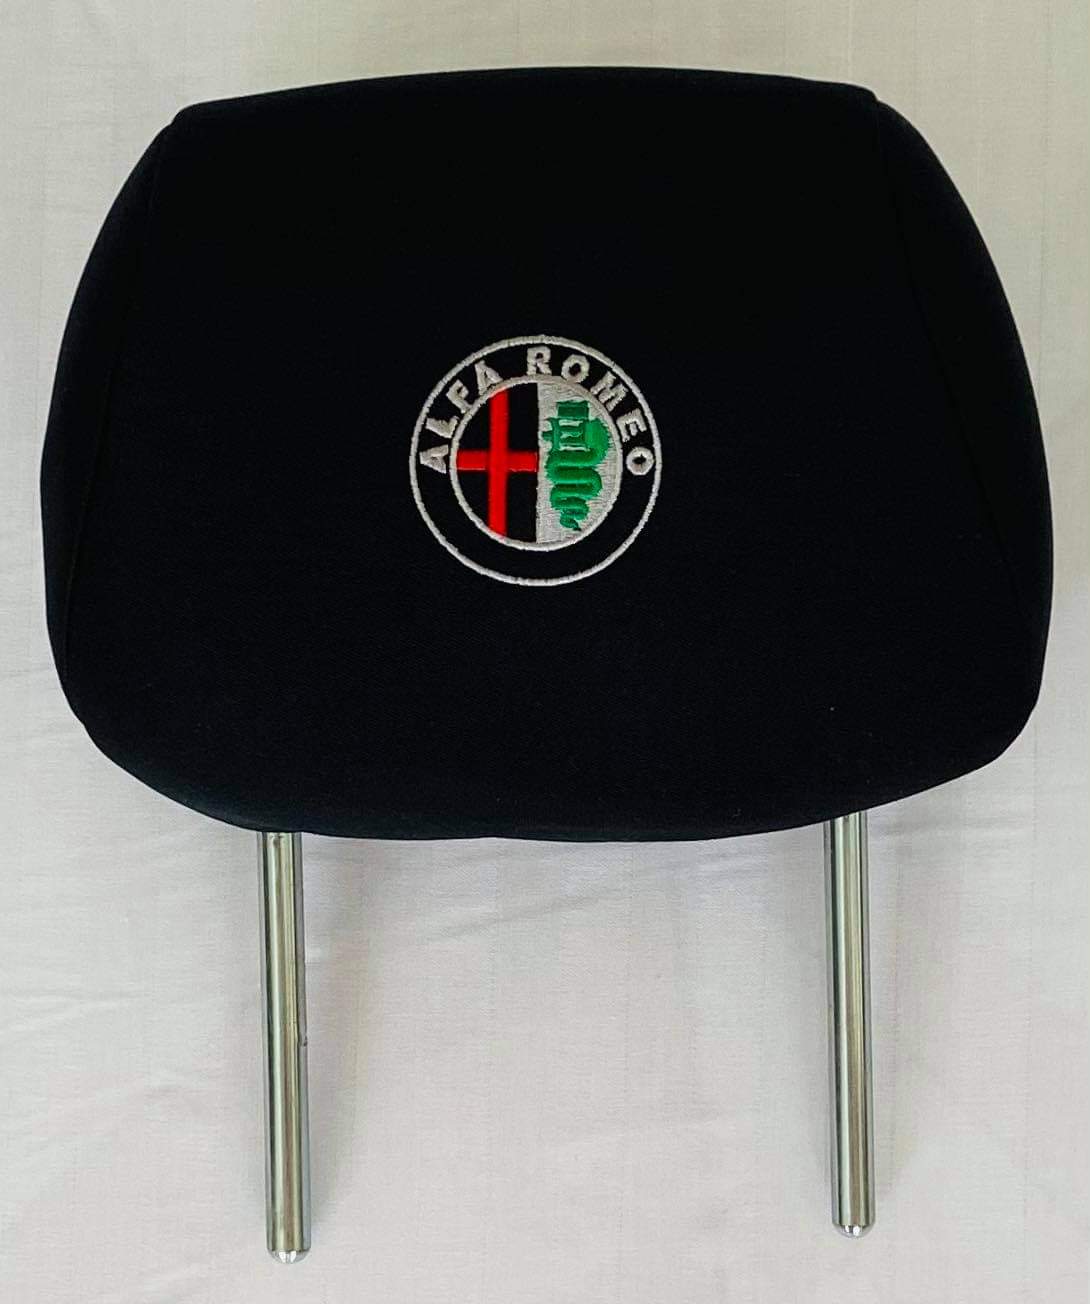 Čierne návleky na opierky hlavy s logom Alfa Romeo - 2ks